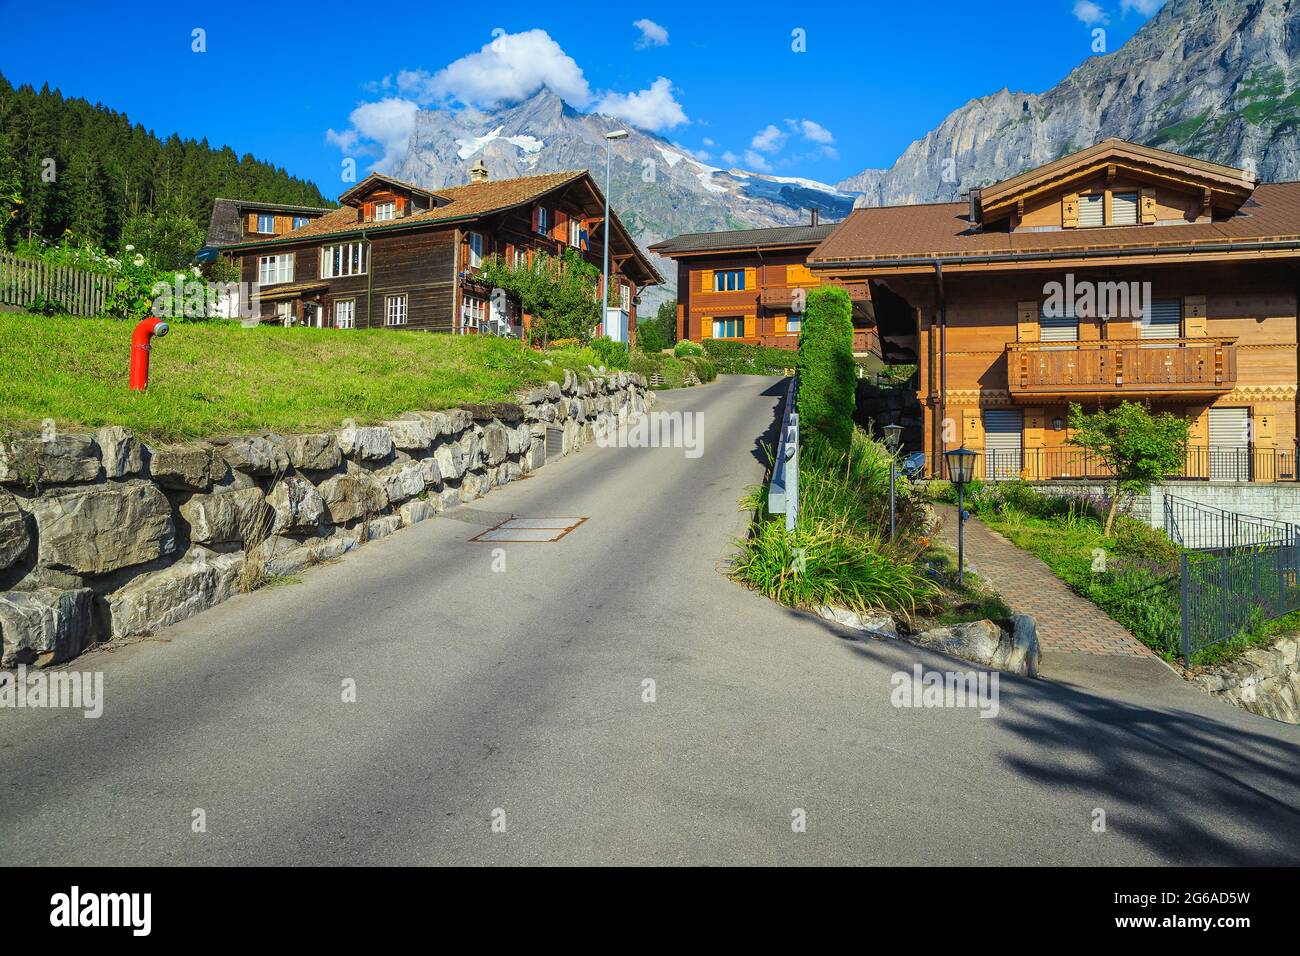 Admirable vue sur la rue avec maisons en bois et jardins dans le village de montagne de Grindelwald, Oberland bernois, Suisse, Europe Banque D'Images